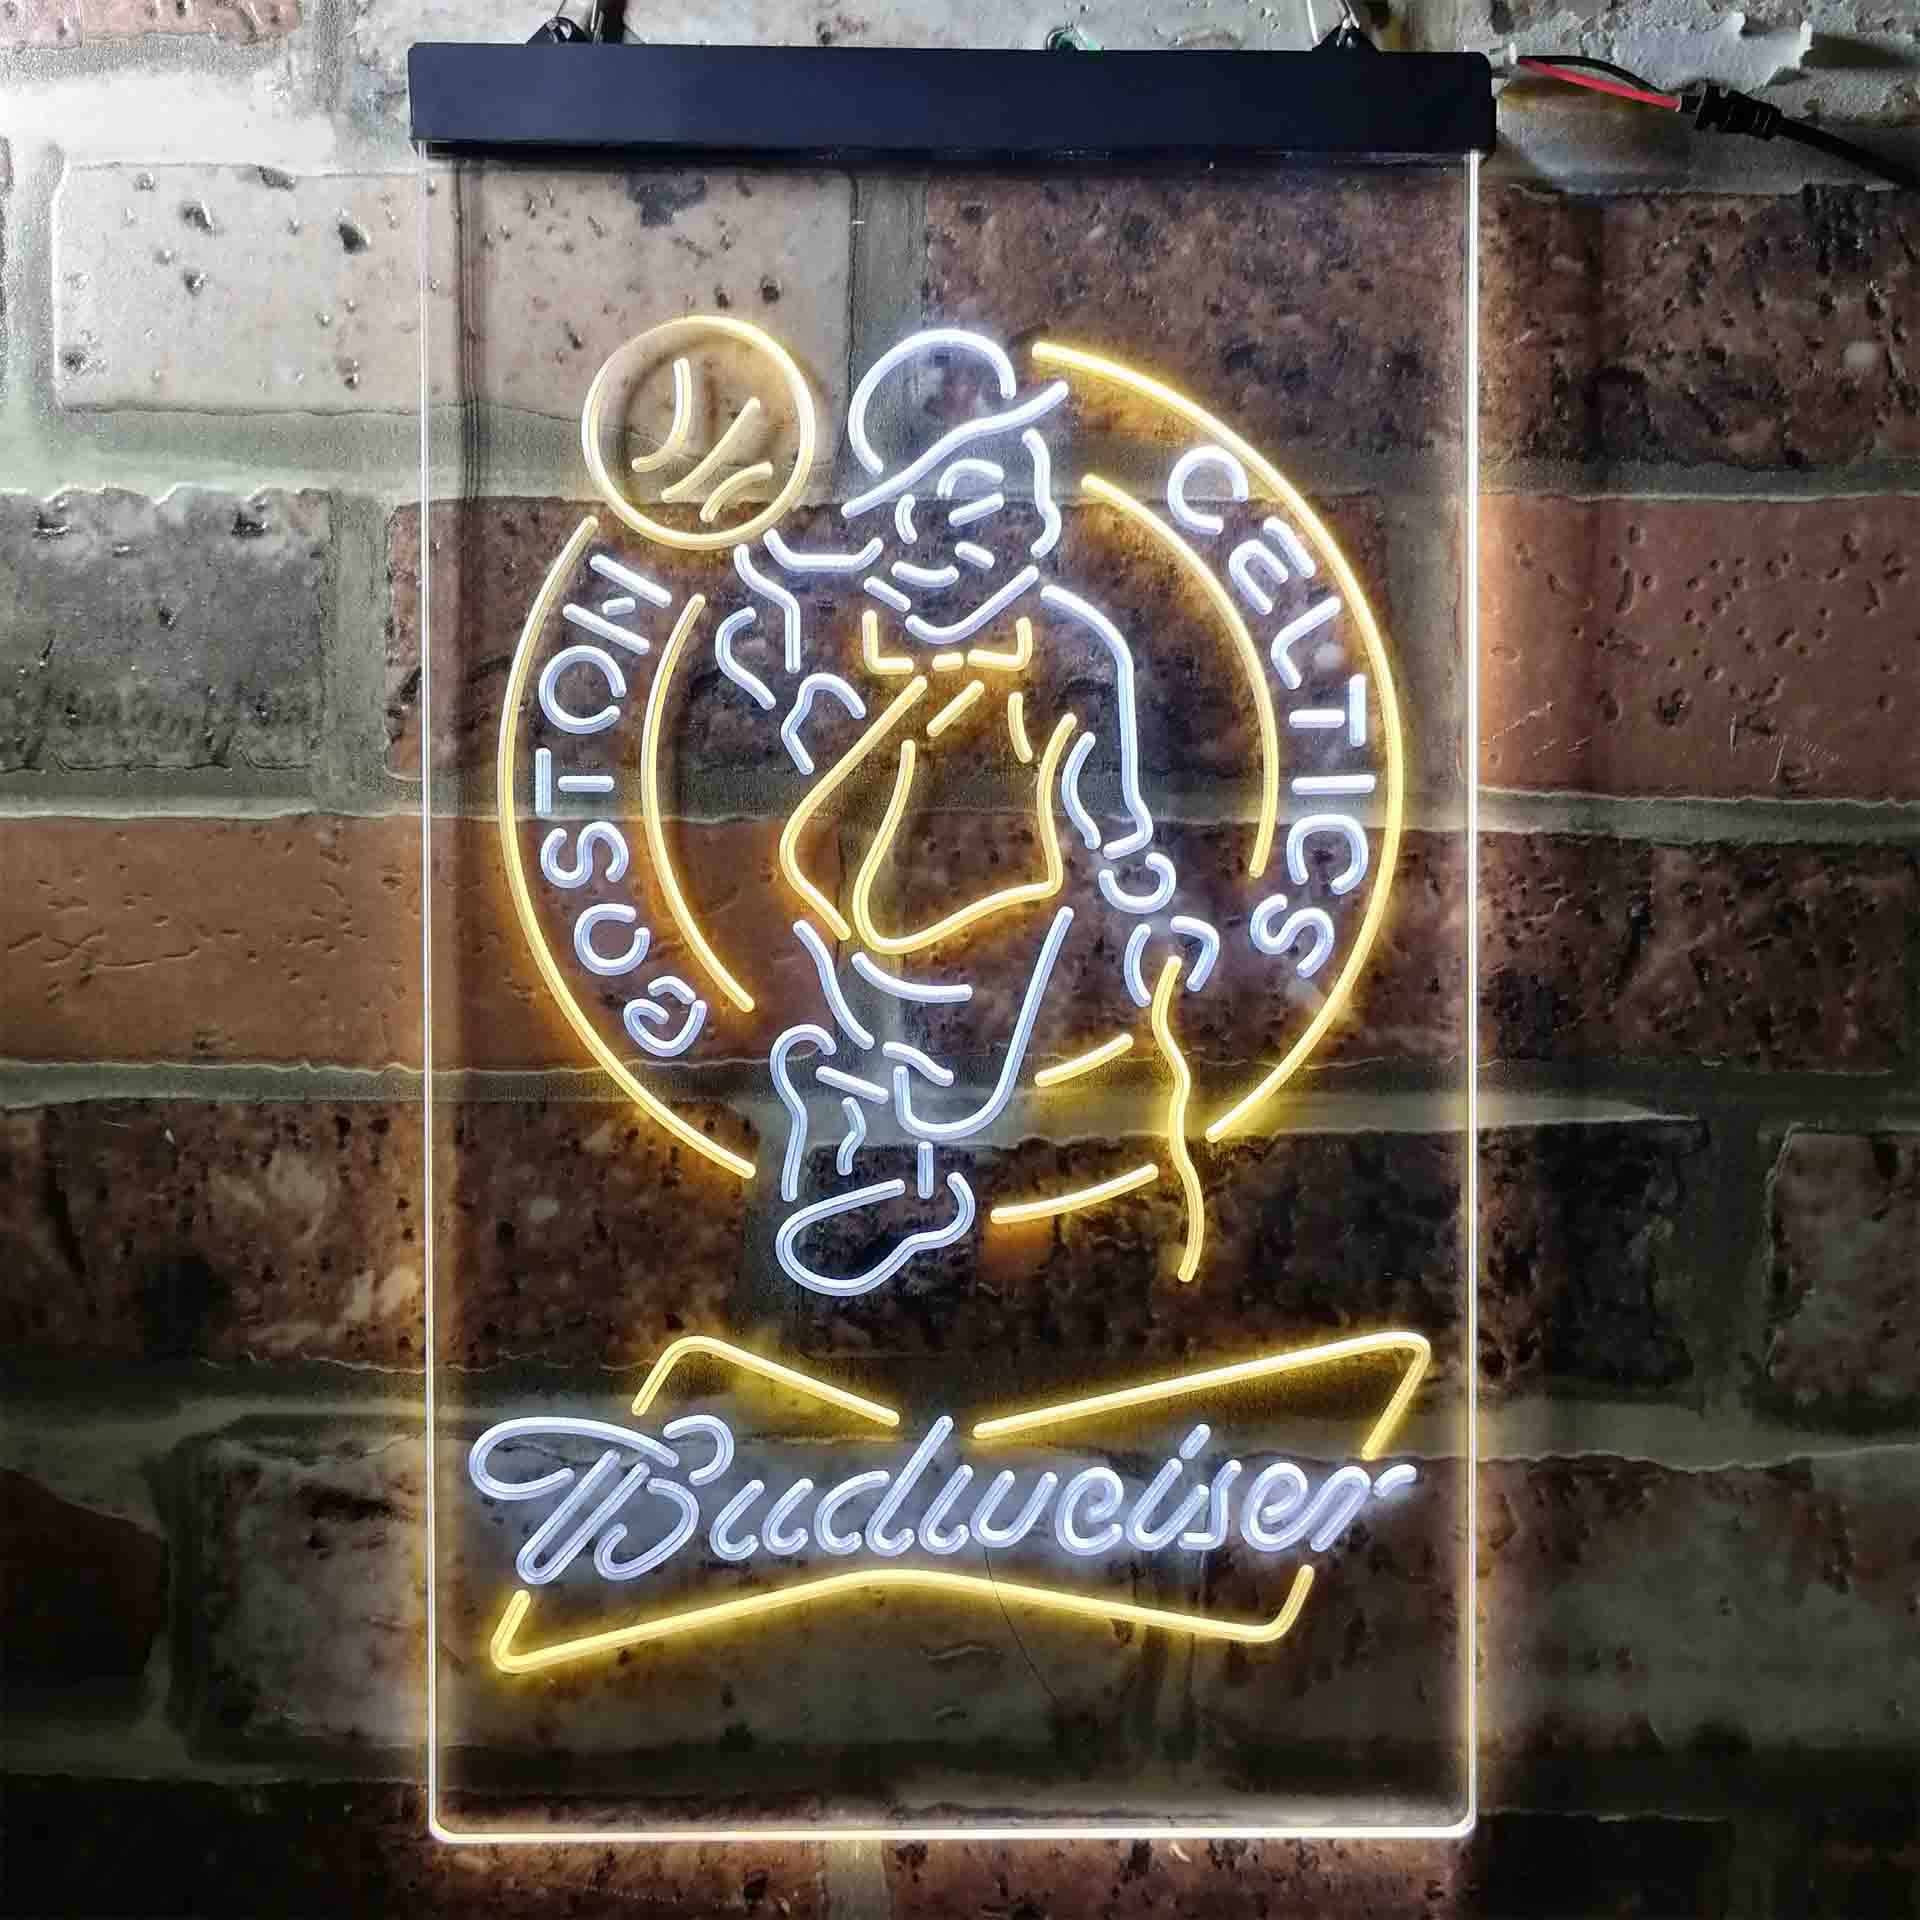 Boston Celtics Budweiser Neon LED Sign